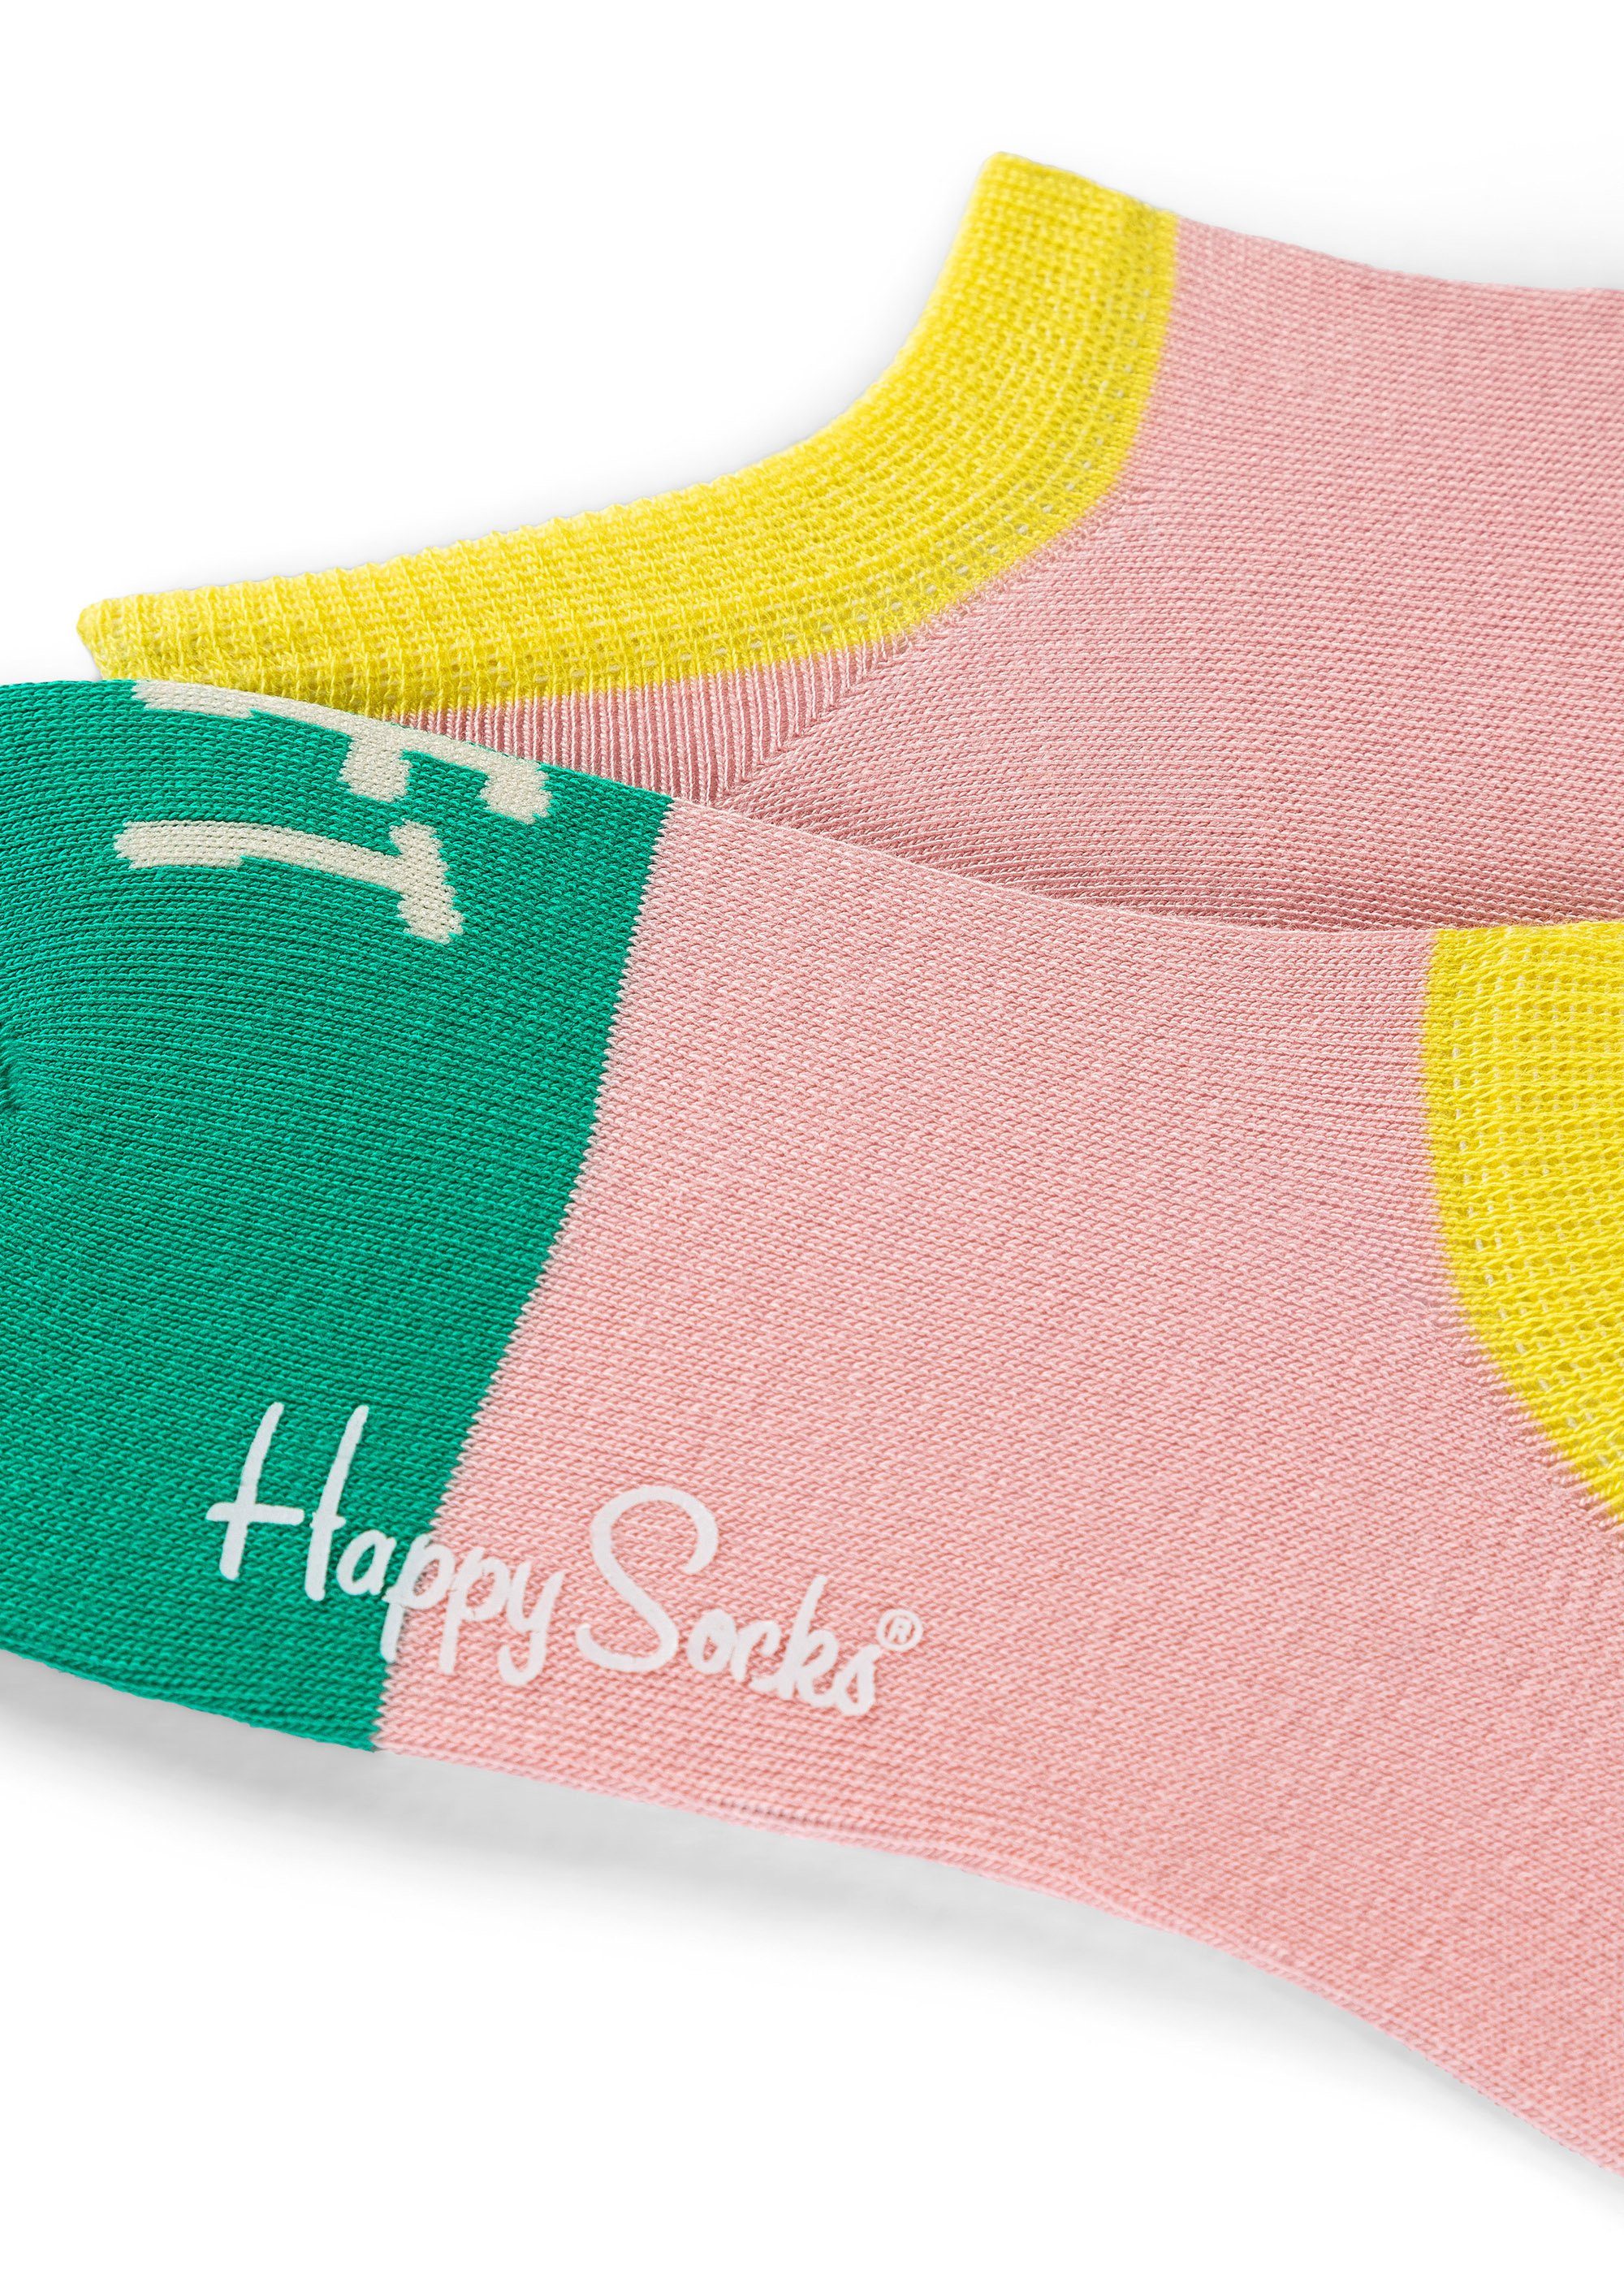 Baumwolle Summer 3-Pack gekämmte Happy Day Show Sock Sneakersocken Socks No